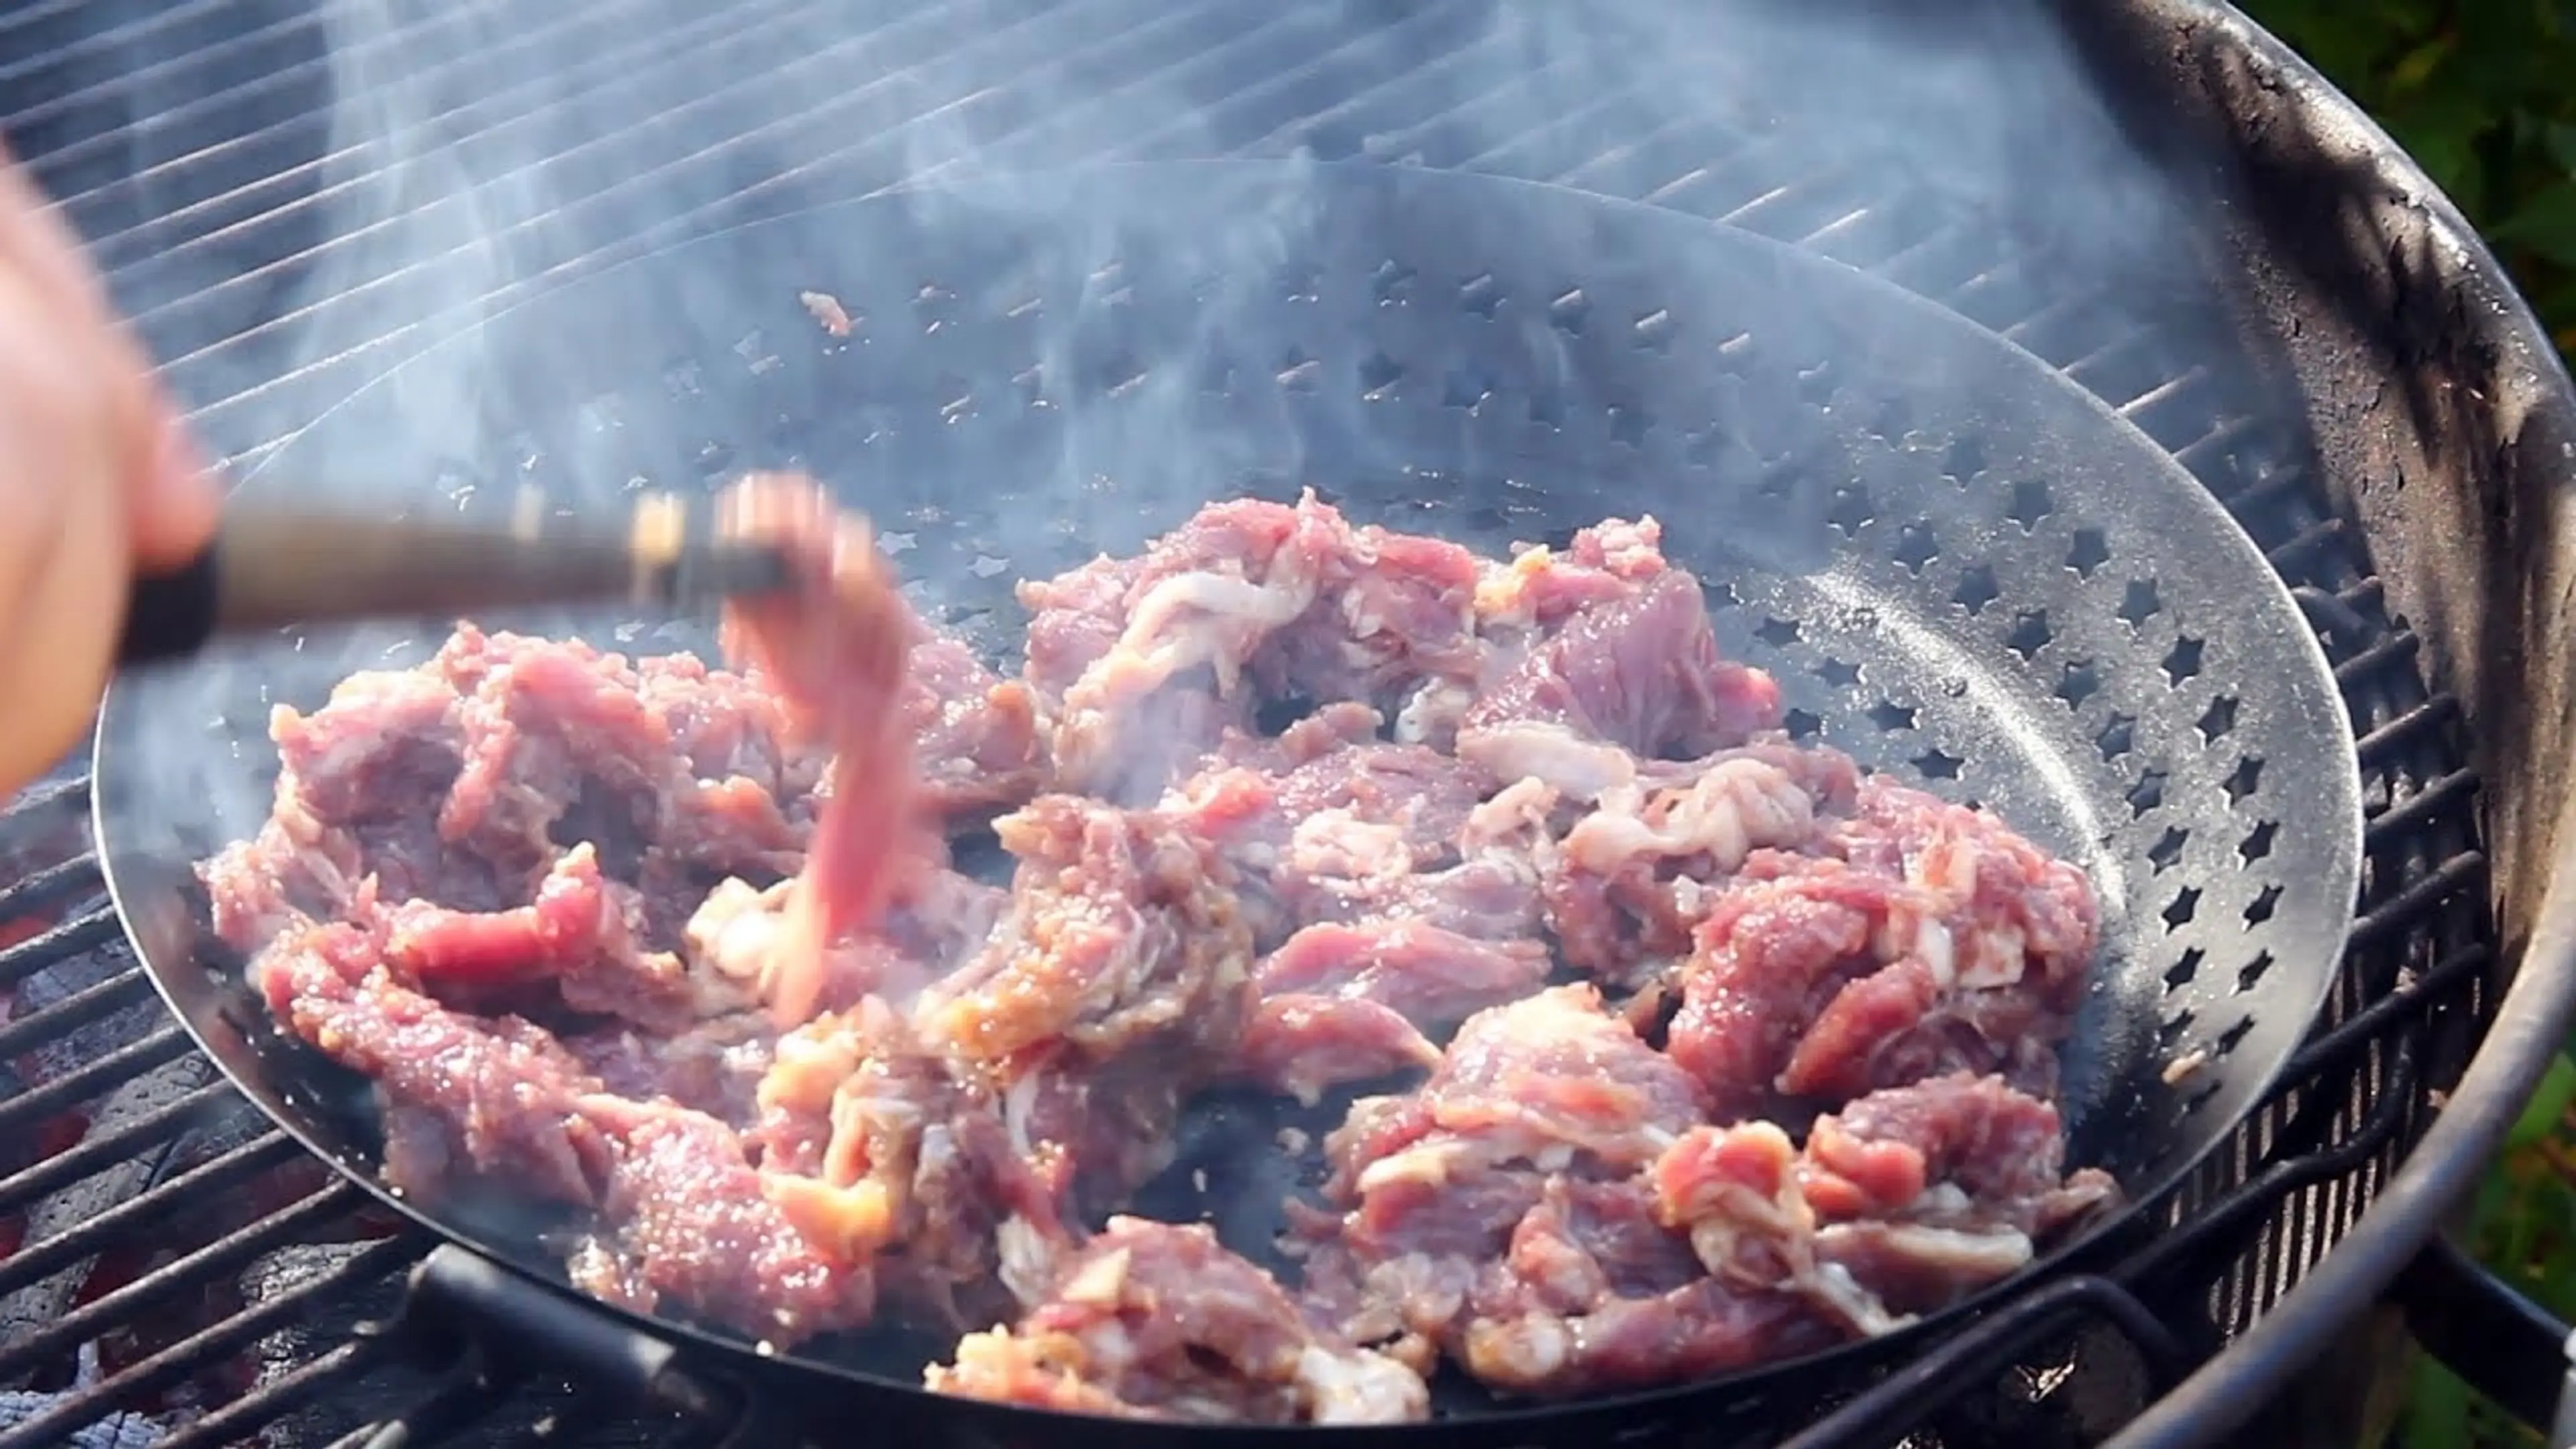 Bulgogi Korean beef BBQ